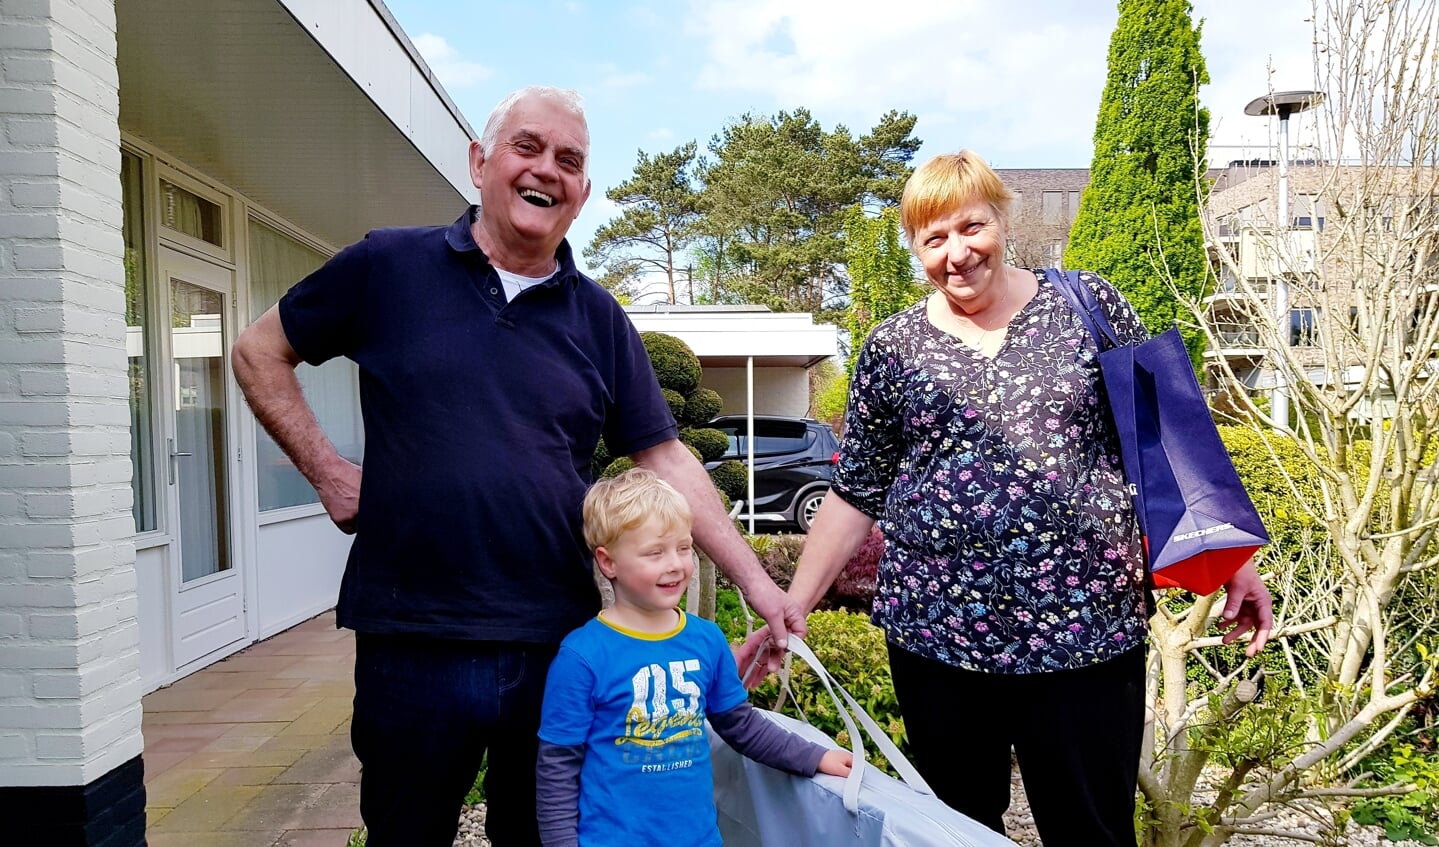 Kleinzoon Daan, met zijn opa Johan en oma Elly, samen weggeregend op Texel. Zal de Moezel beter weer bieden? (Foto: Linda Meijer)